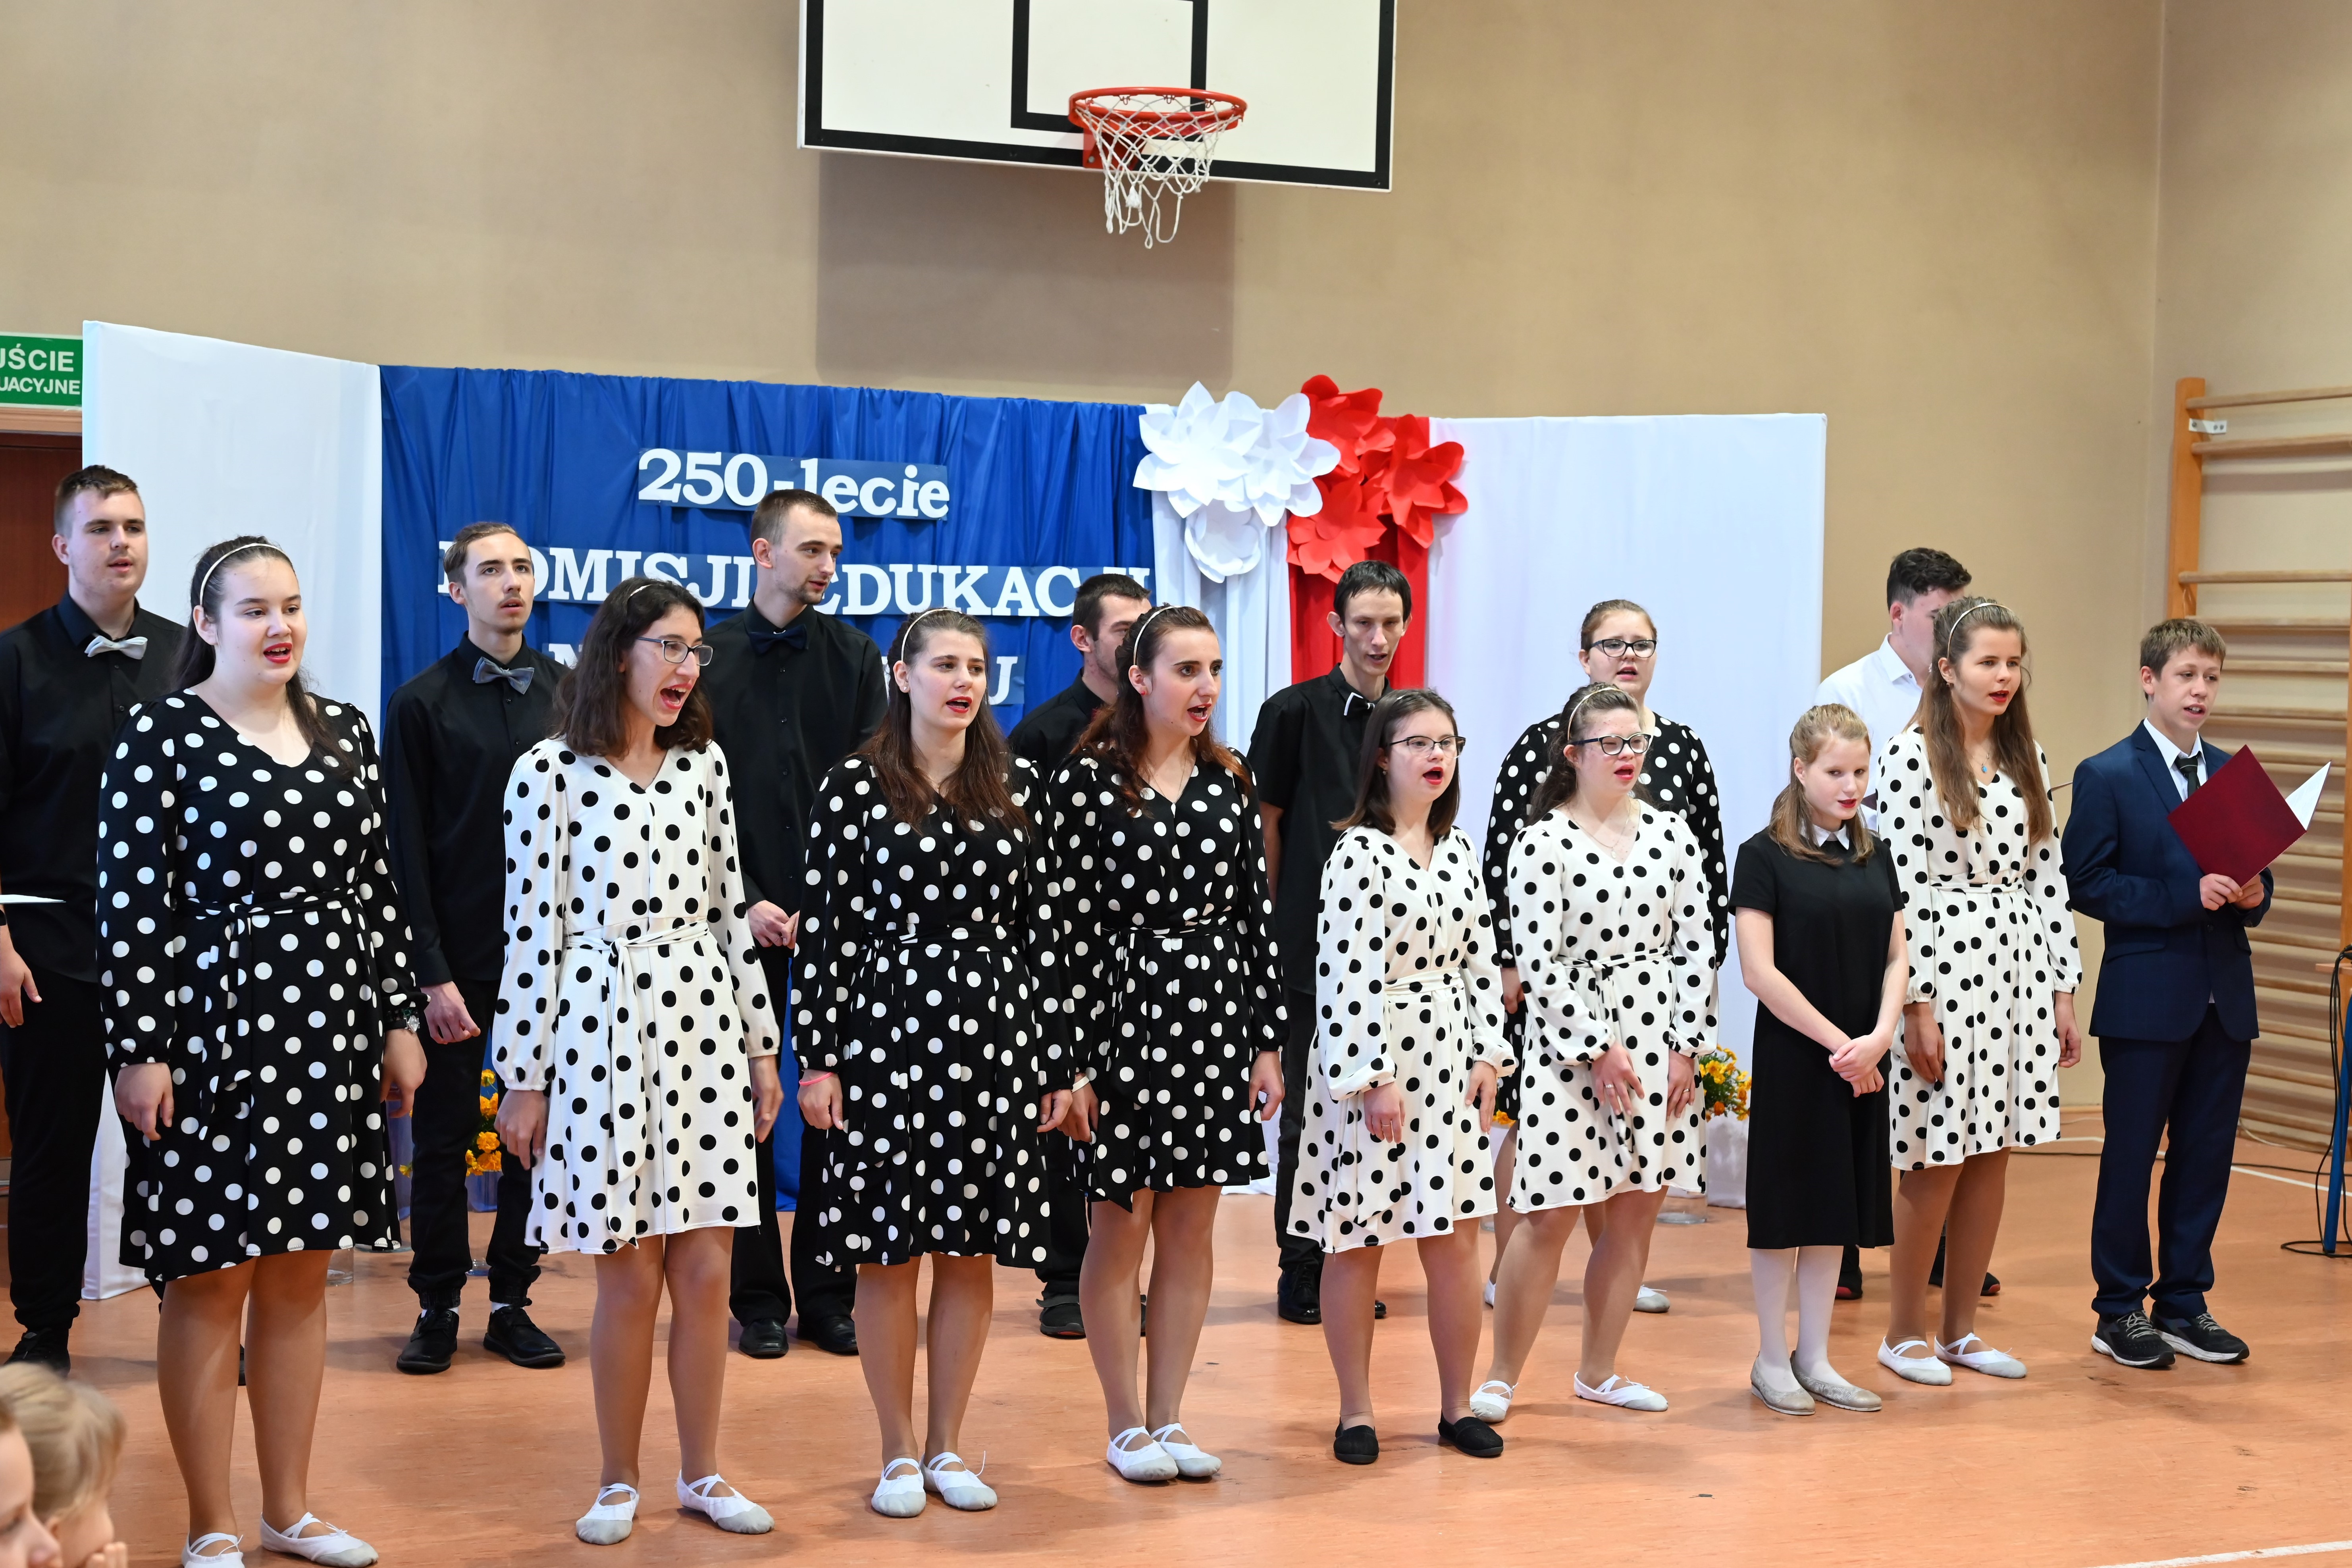 Dzień Edukacji Narodowej | Duża grupa młodzieży ubranej galowo chóralnie śpiewa piosenkę podczas alademii. Dziewczynki w białych sukienkach w czarne kropki lub w czarnych w białe kropki, chłopcy w czarnych lub białych koszulach, jeden w garniturze. W tle dekoracja..JPG